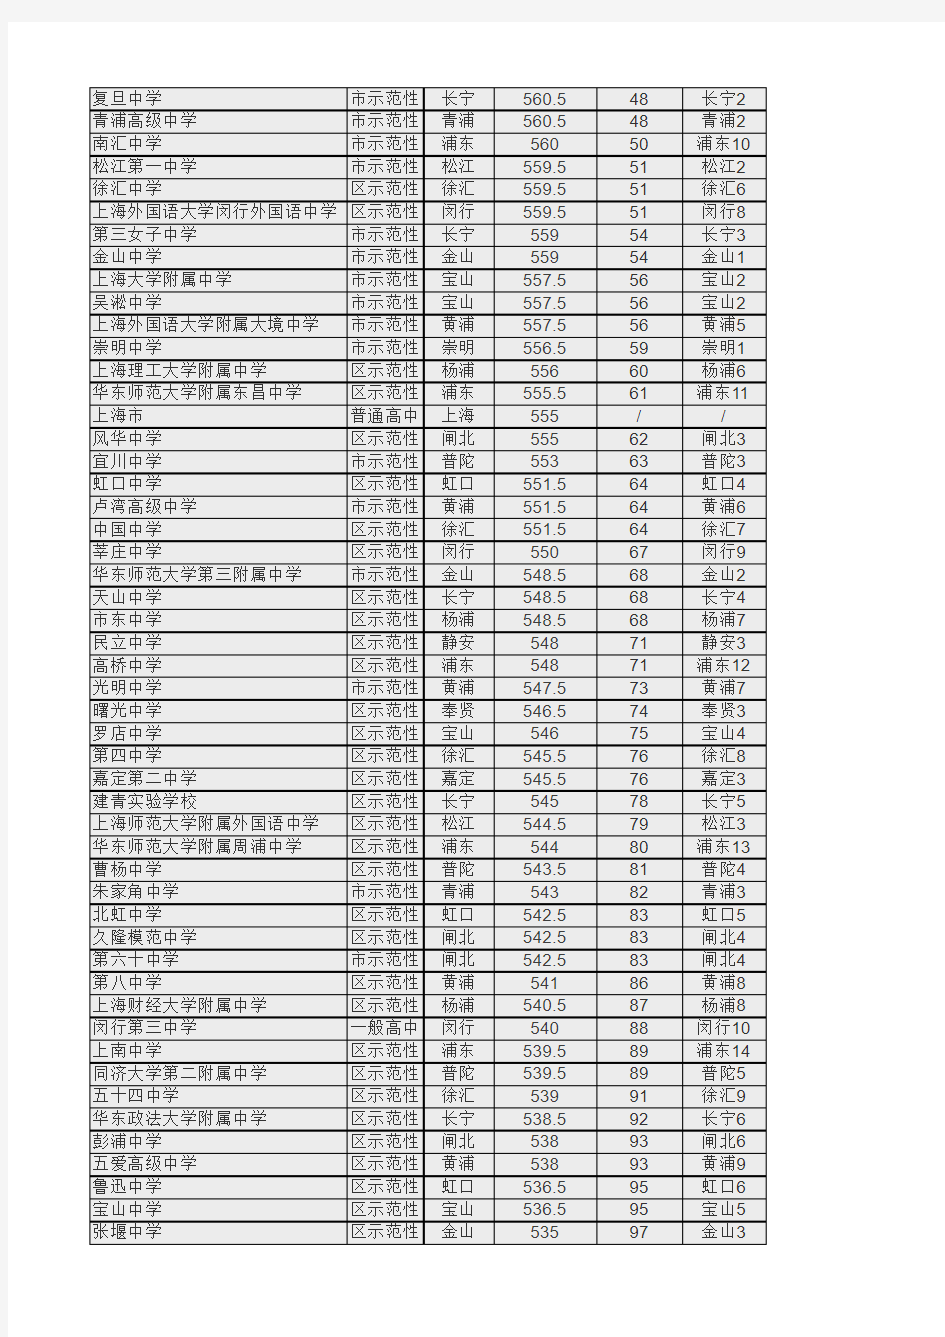 2015年上海197所高中录取分数线排名